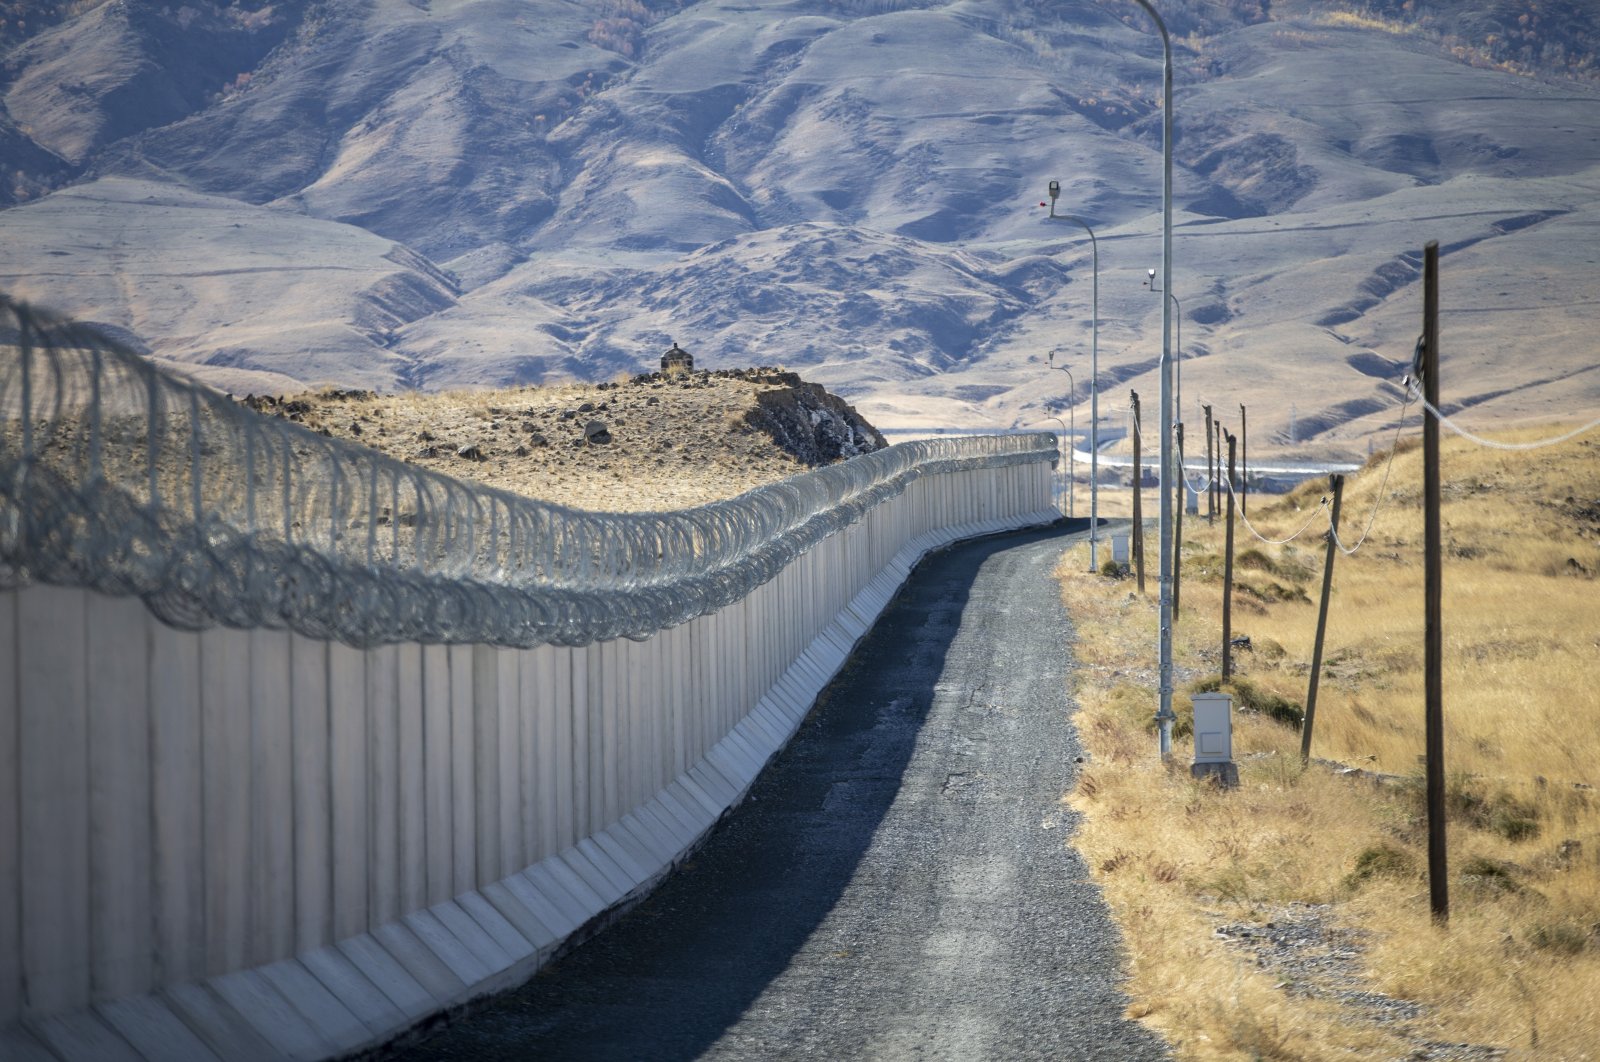 Tembok sepanjang 145 km di perbatasan timur Turki menghalangi penyeberangan ilegal